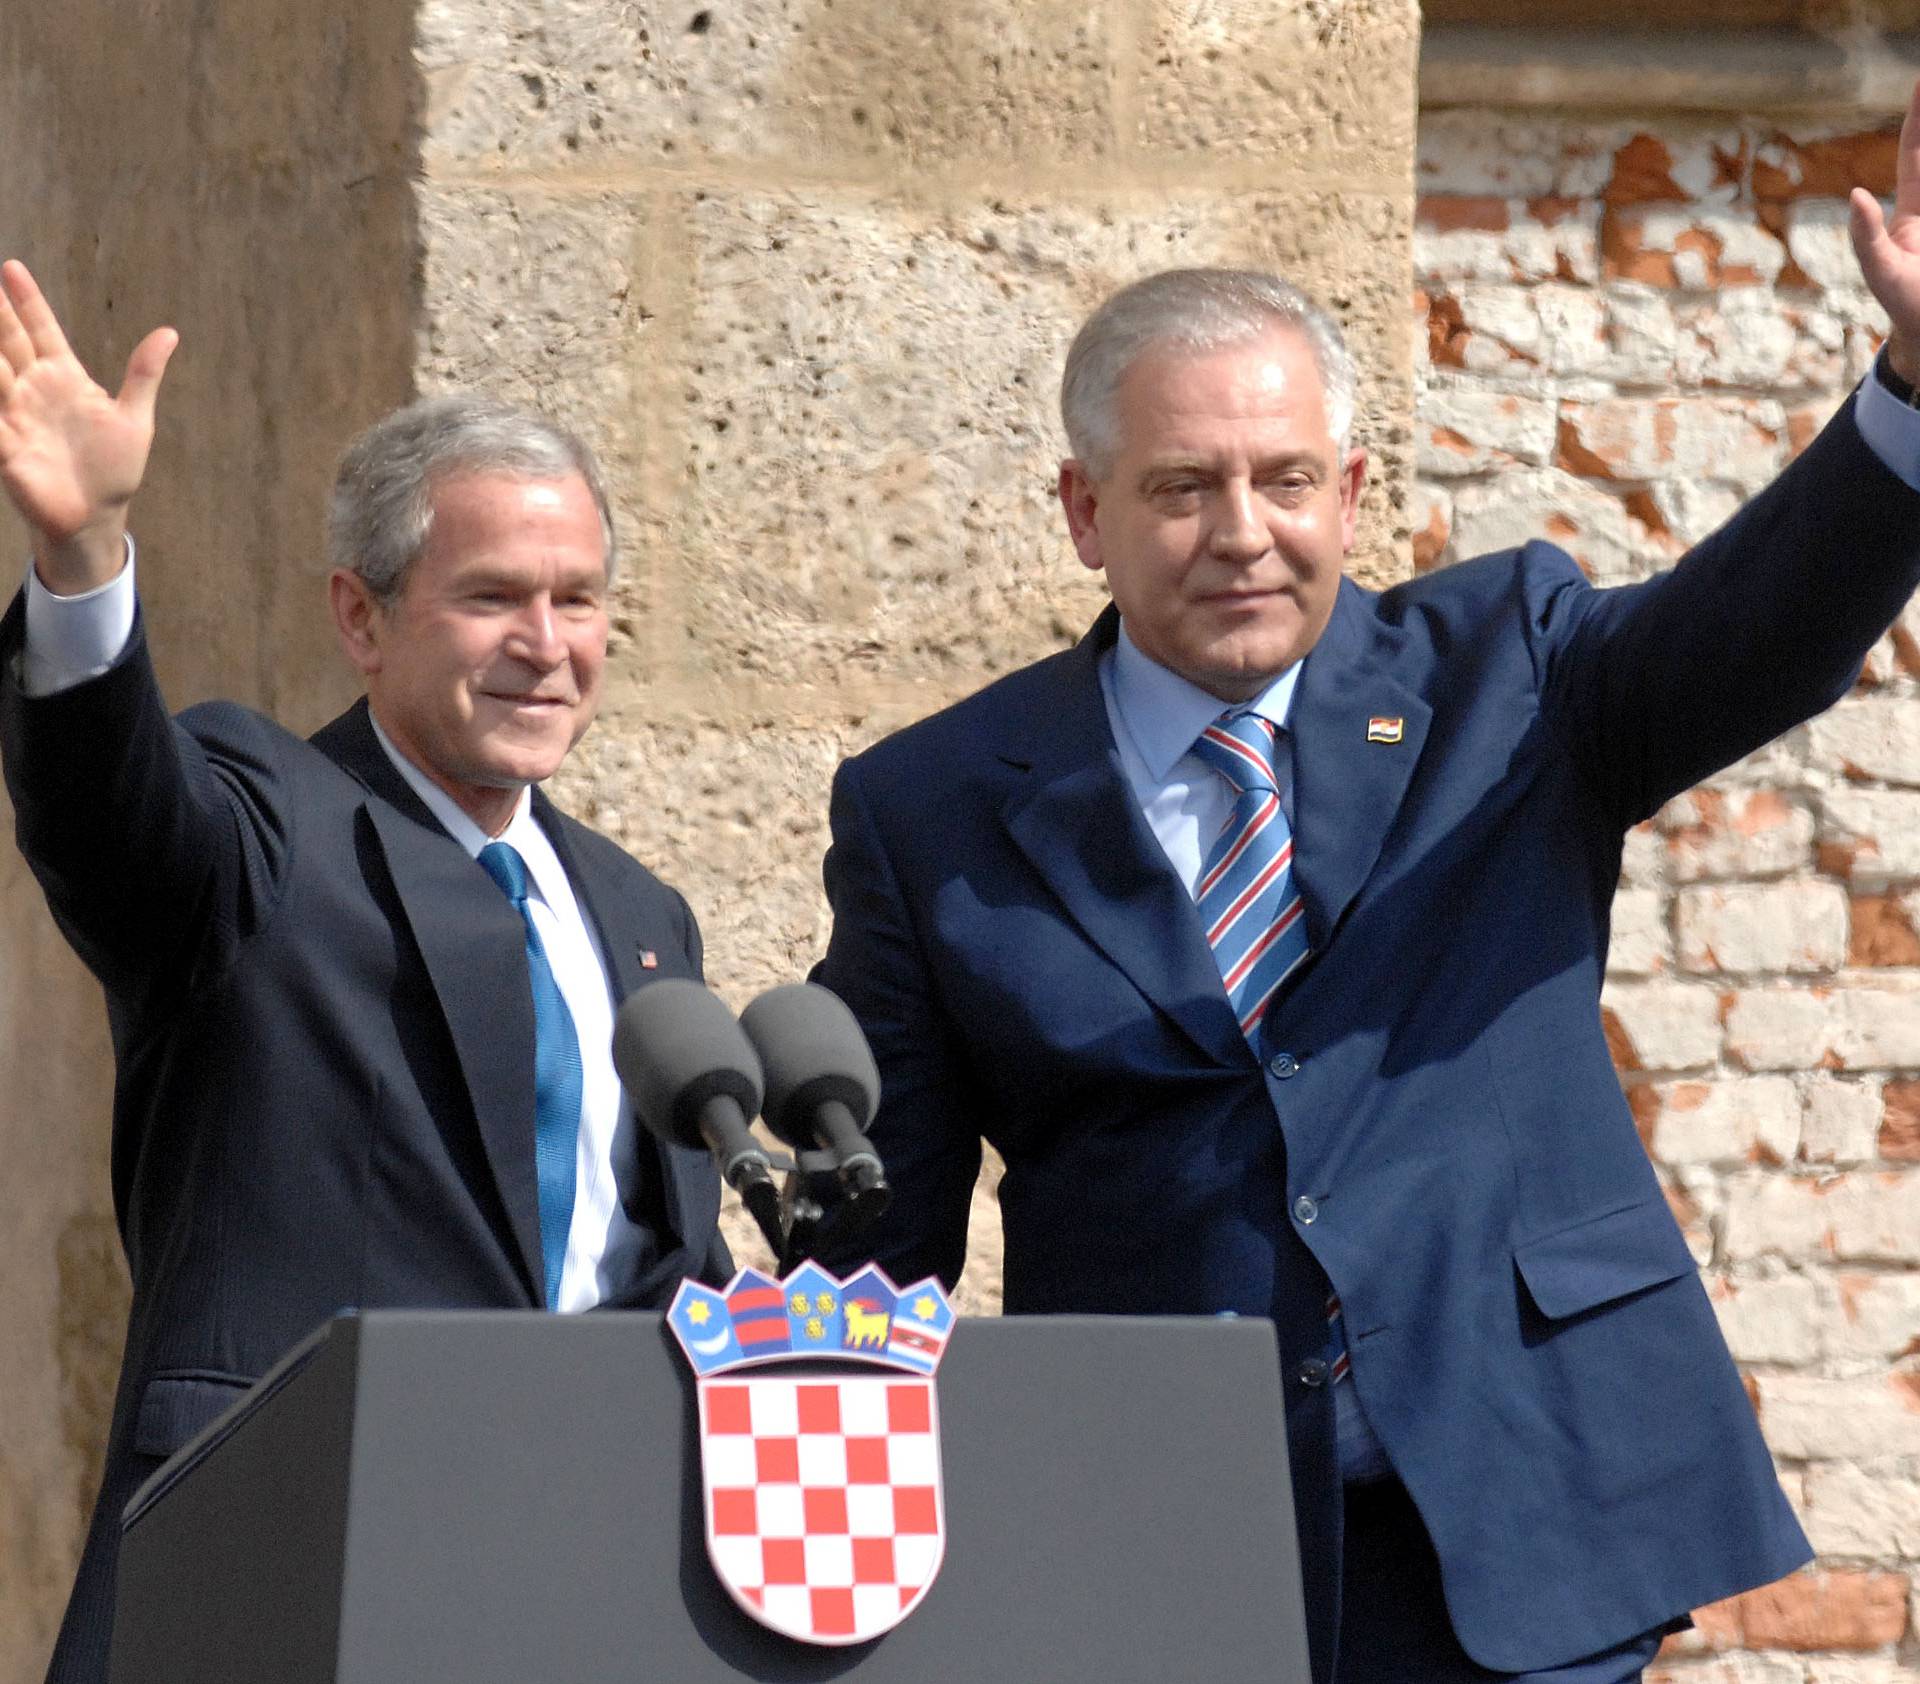 Američkog predsjednika Busha u Hrvatskoj dočekao - mrtvac!